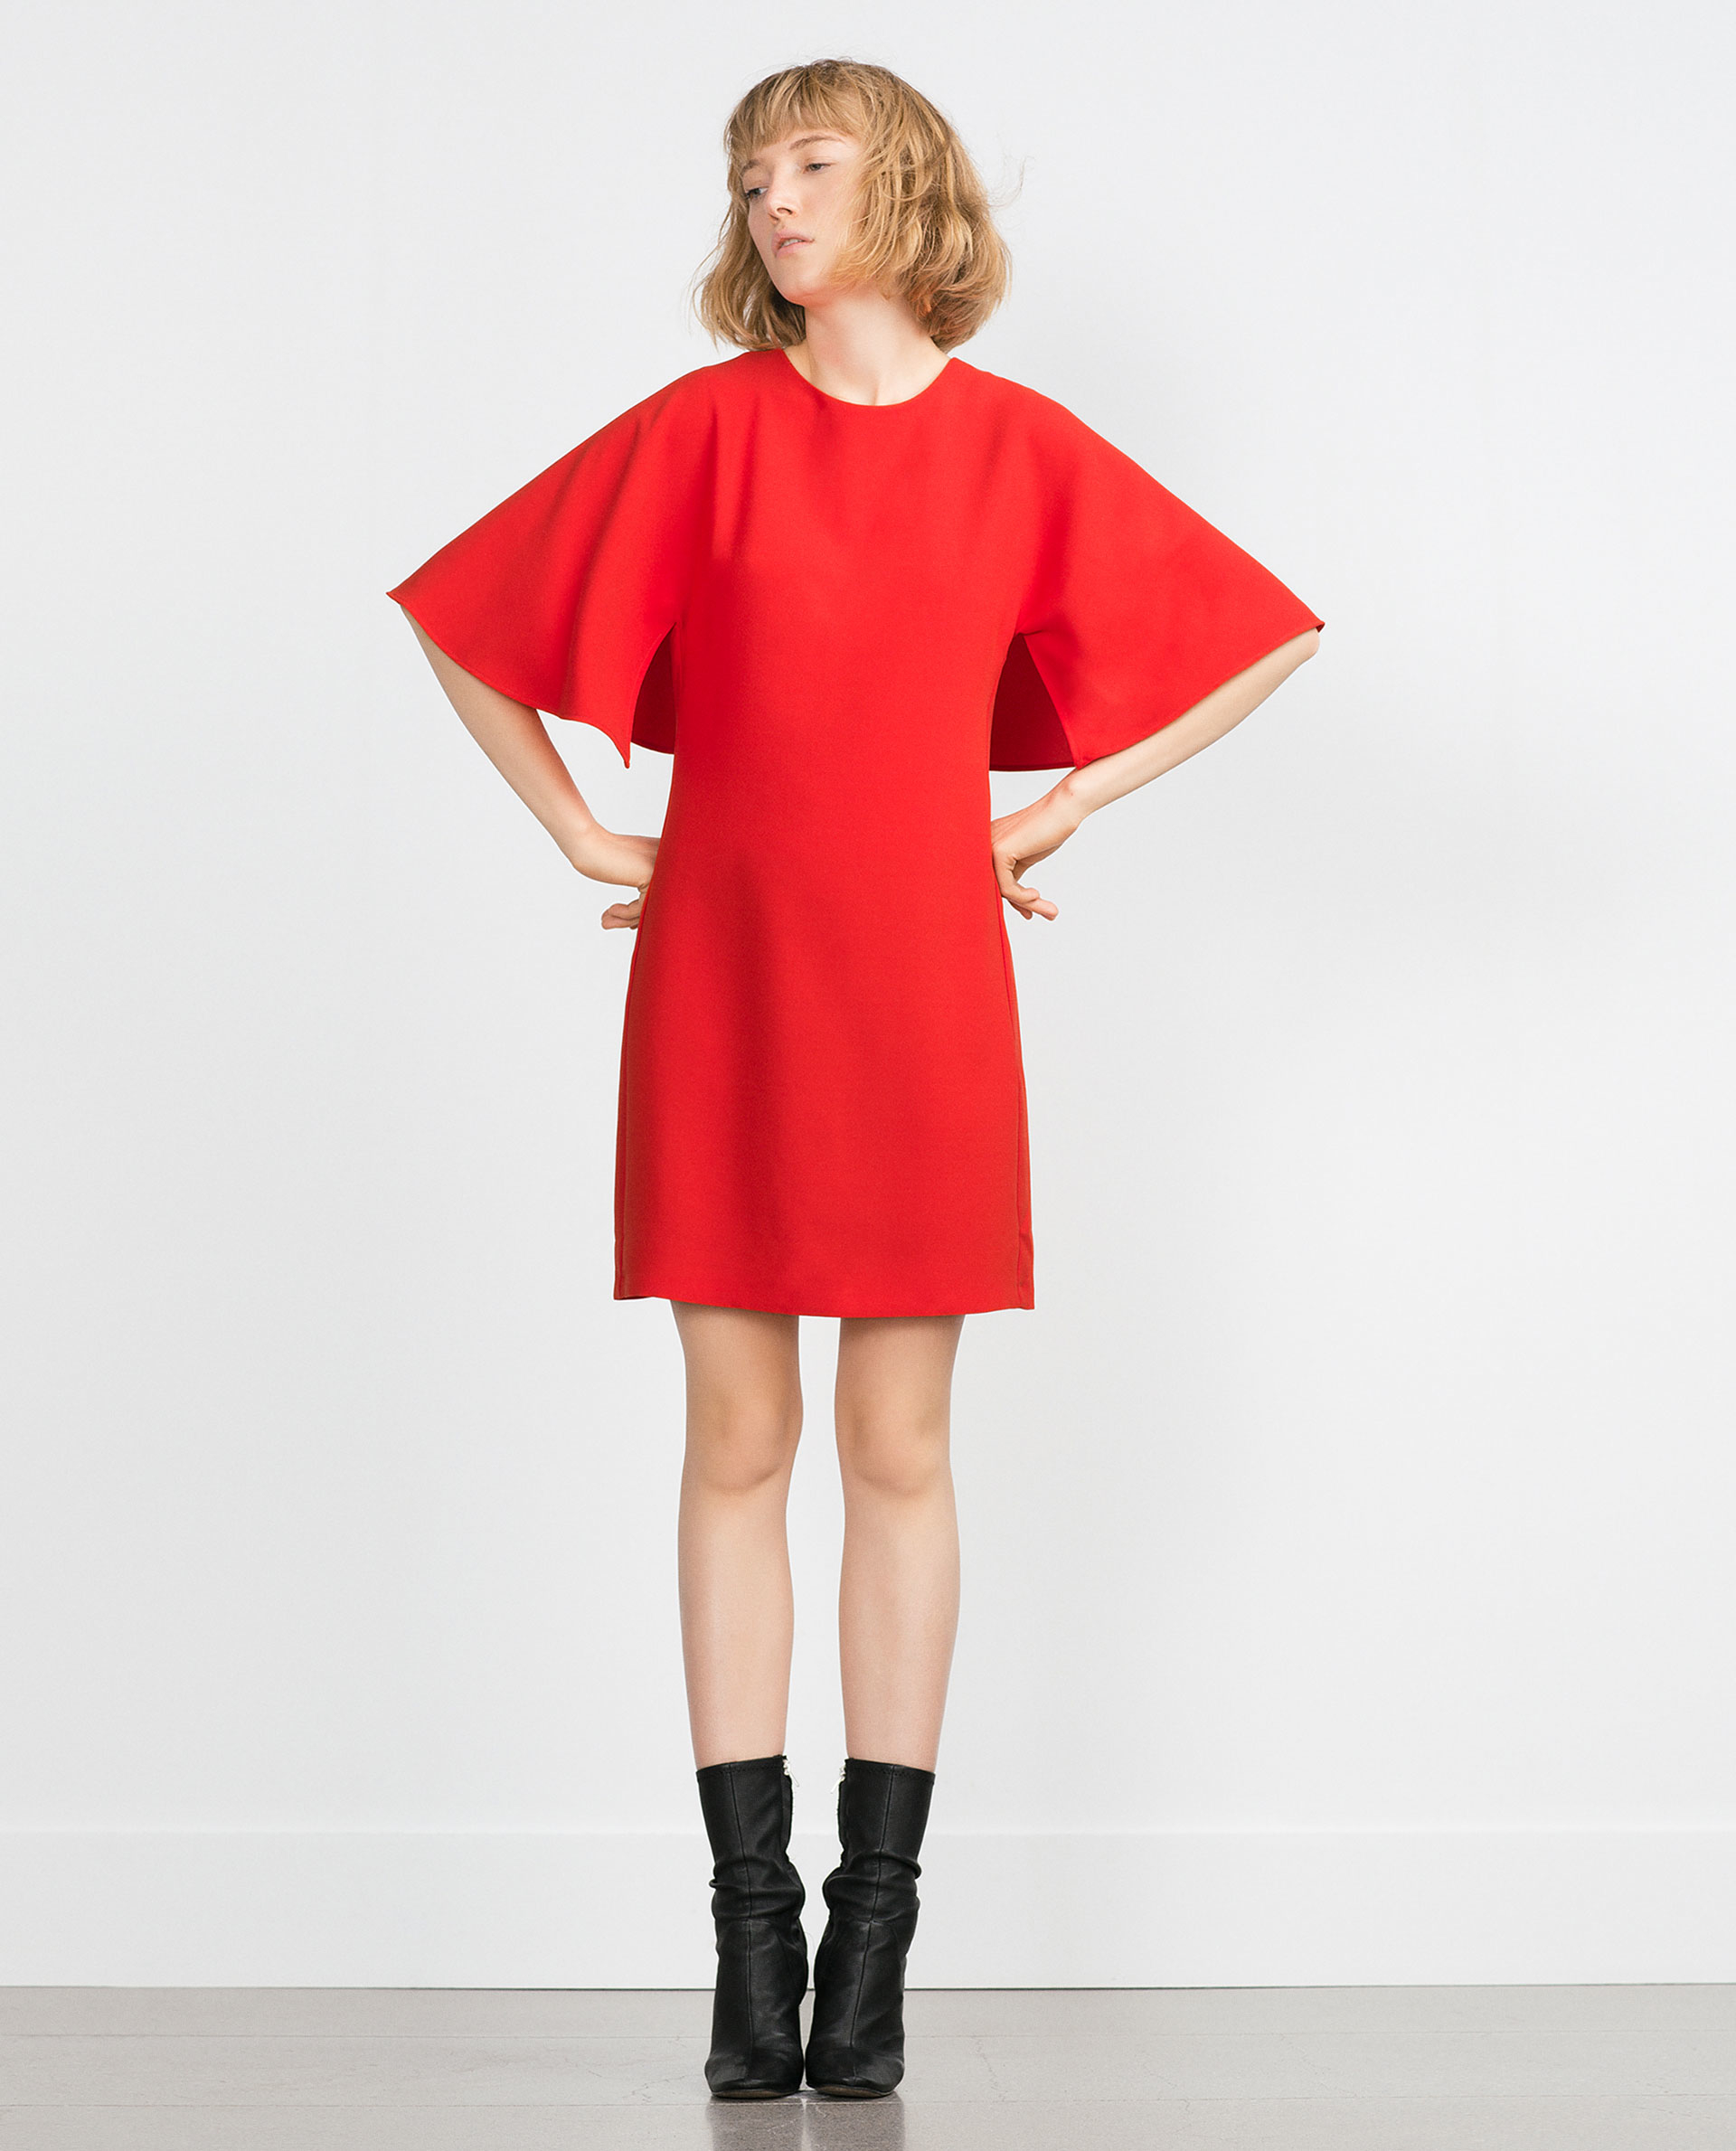  zara  red  dress  Dress  Yp